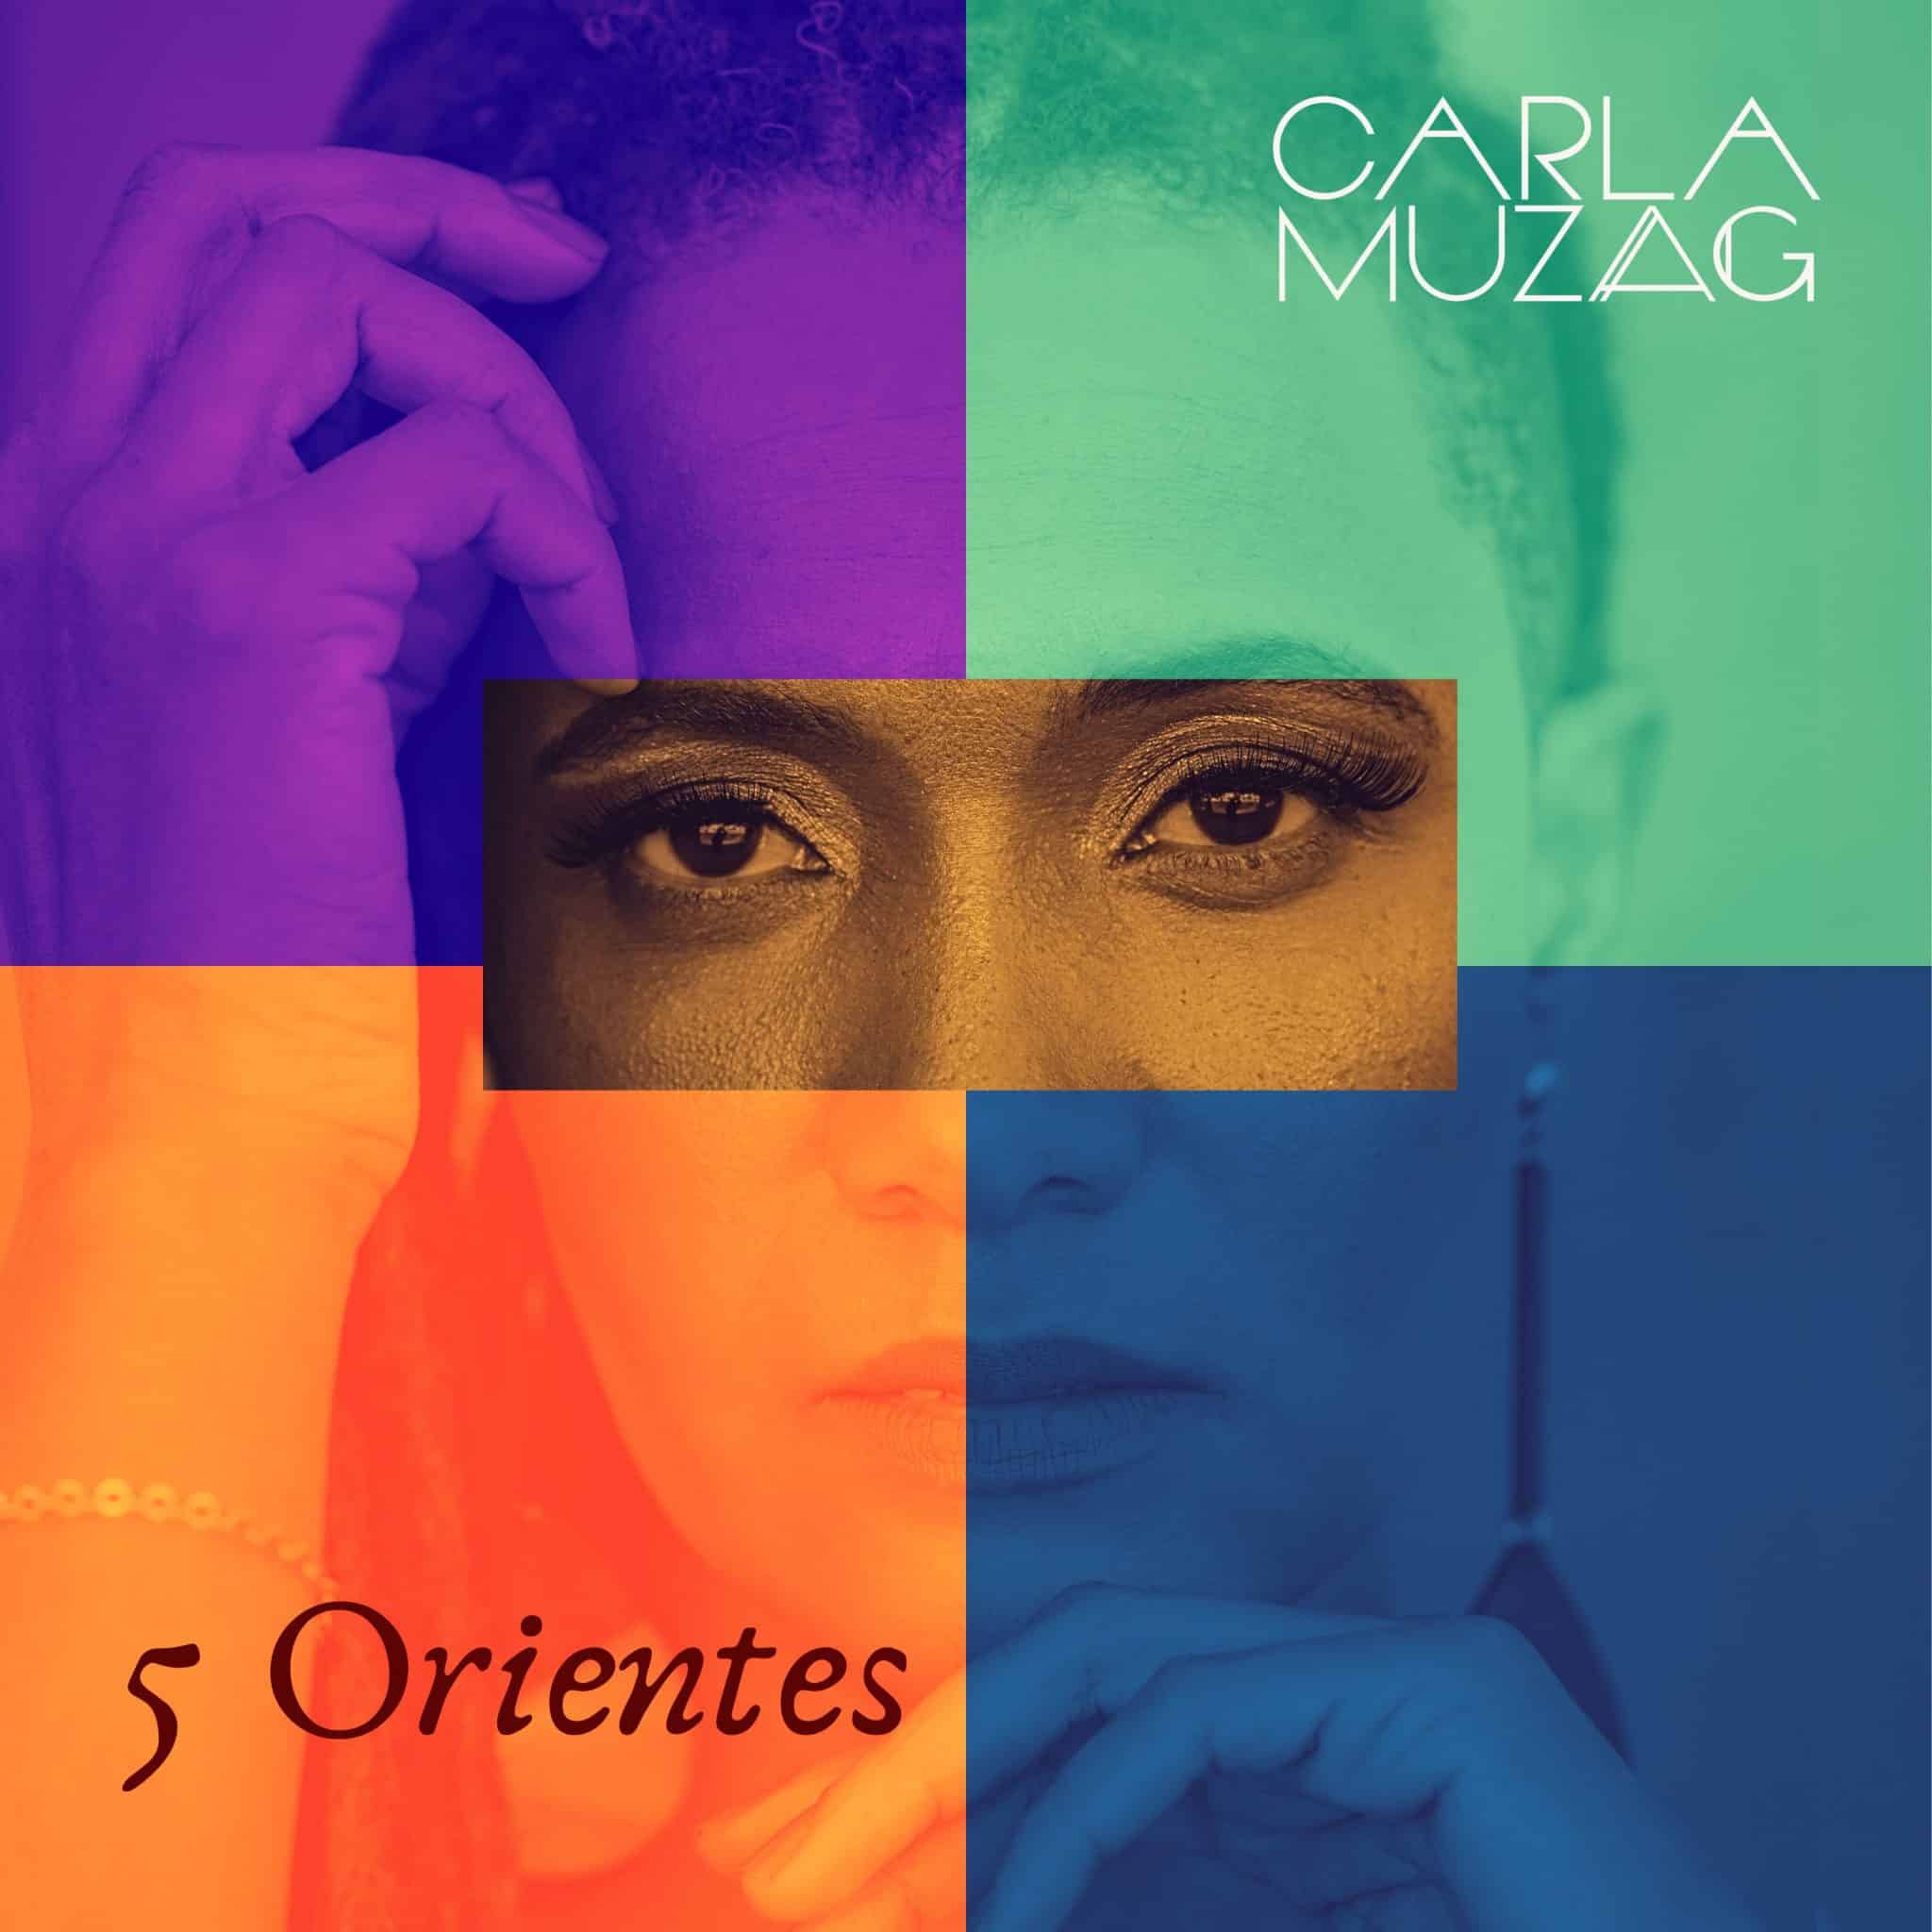 revistaprosaversoearte.com - '5 Orientes' segundo álbum de Carla Muzag